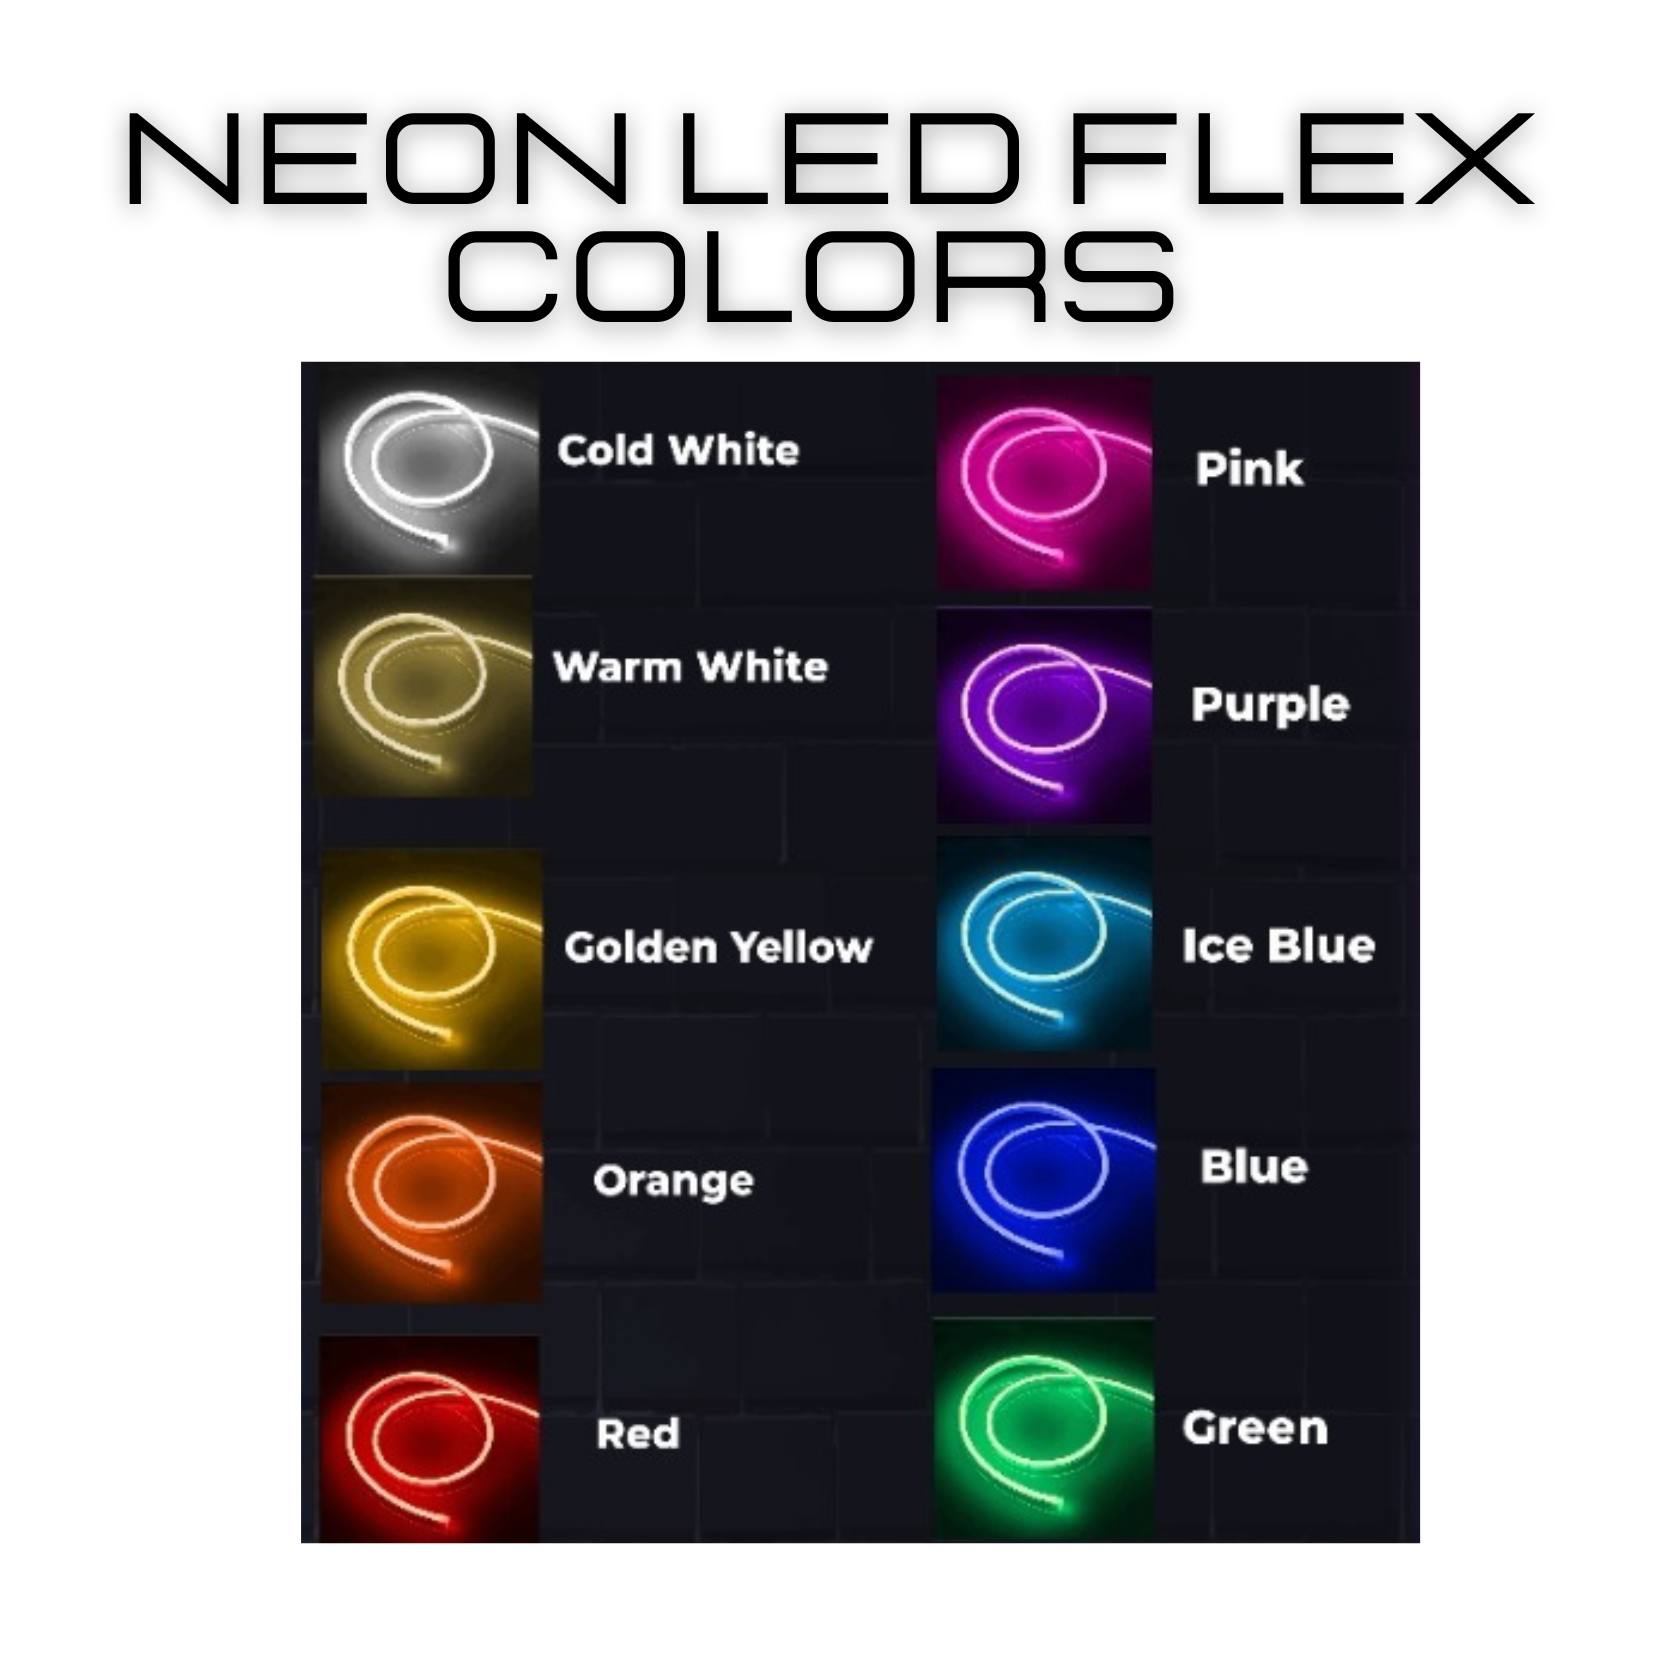 Neon LED Flex Colors